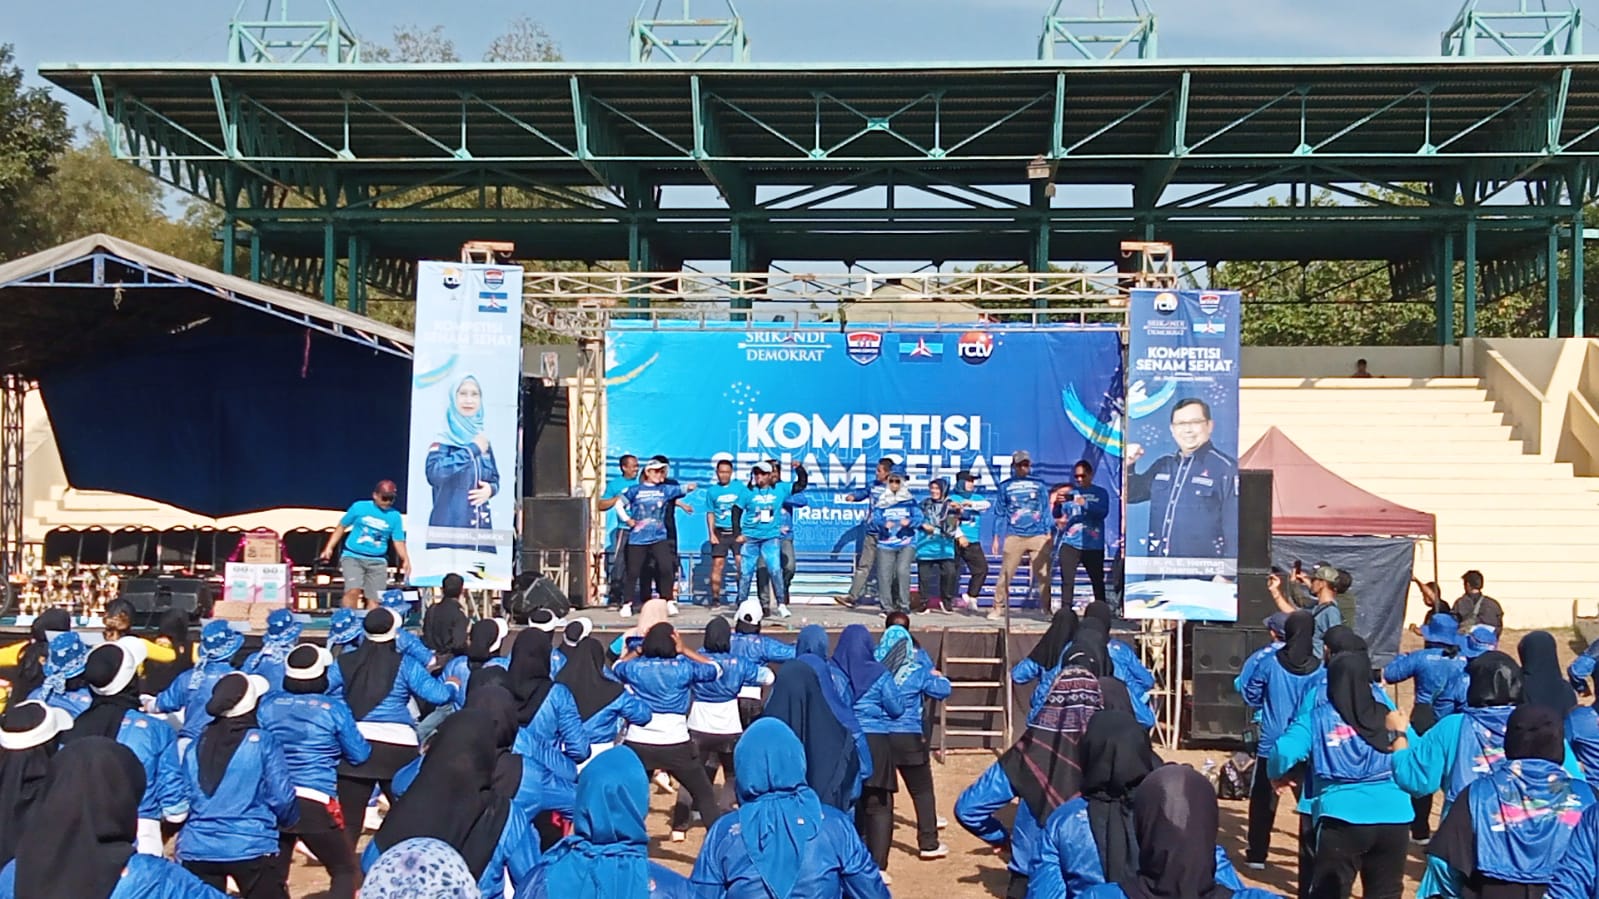 Kemeriahan Kompetisi Senam Sehat Bersama dr Ratnawati di Stadion Bima Madya Cirebon, Diikuti Ribuan Peserta